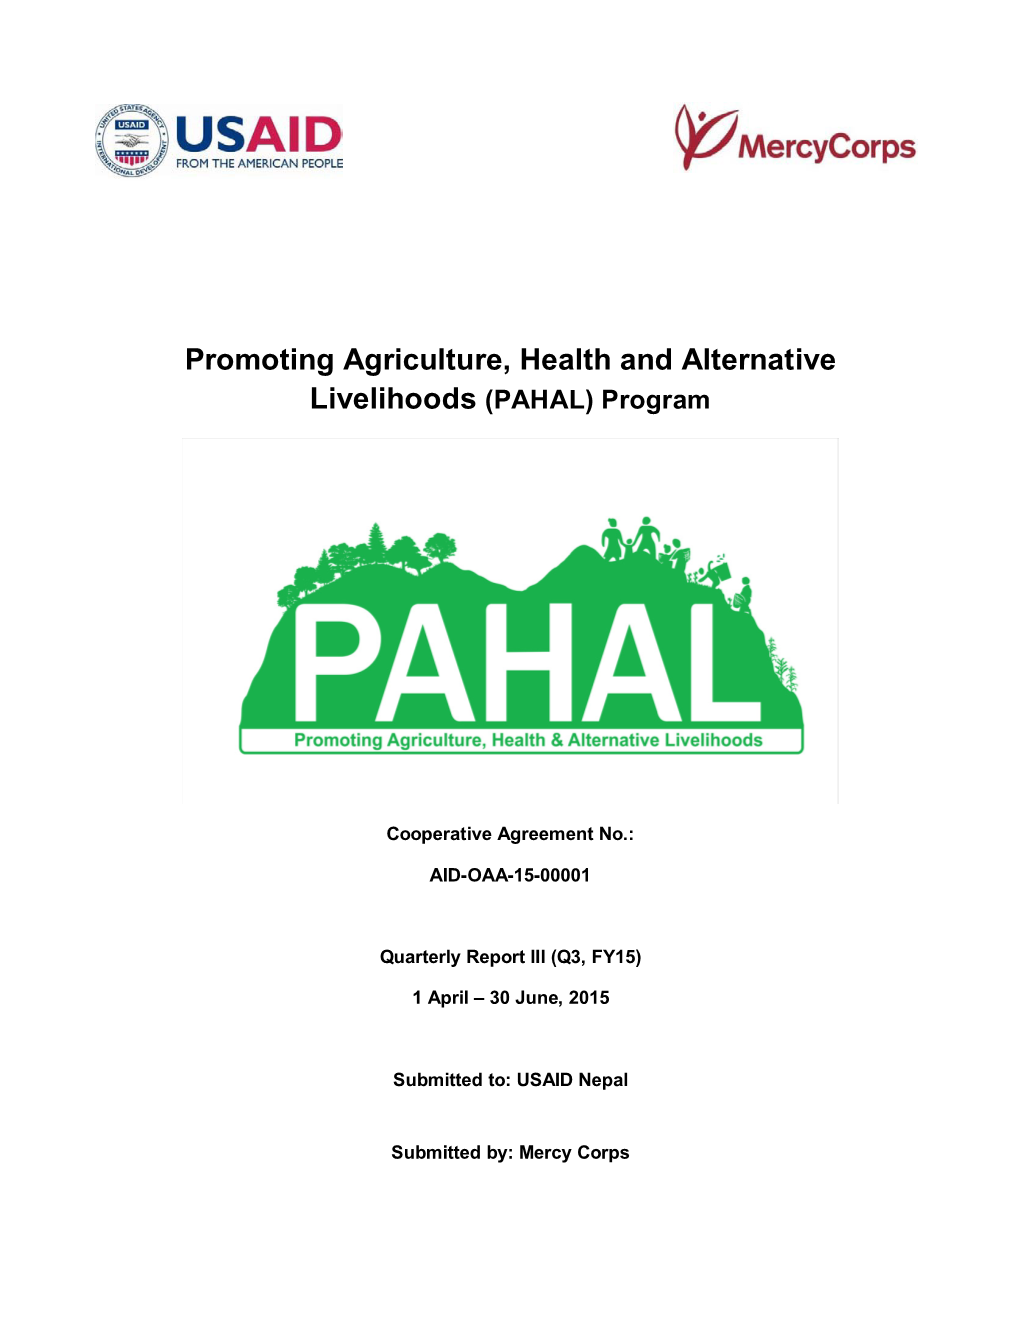 PAHAL) Program